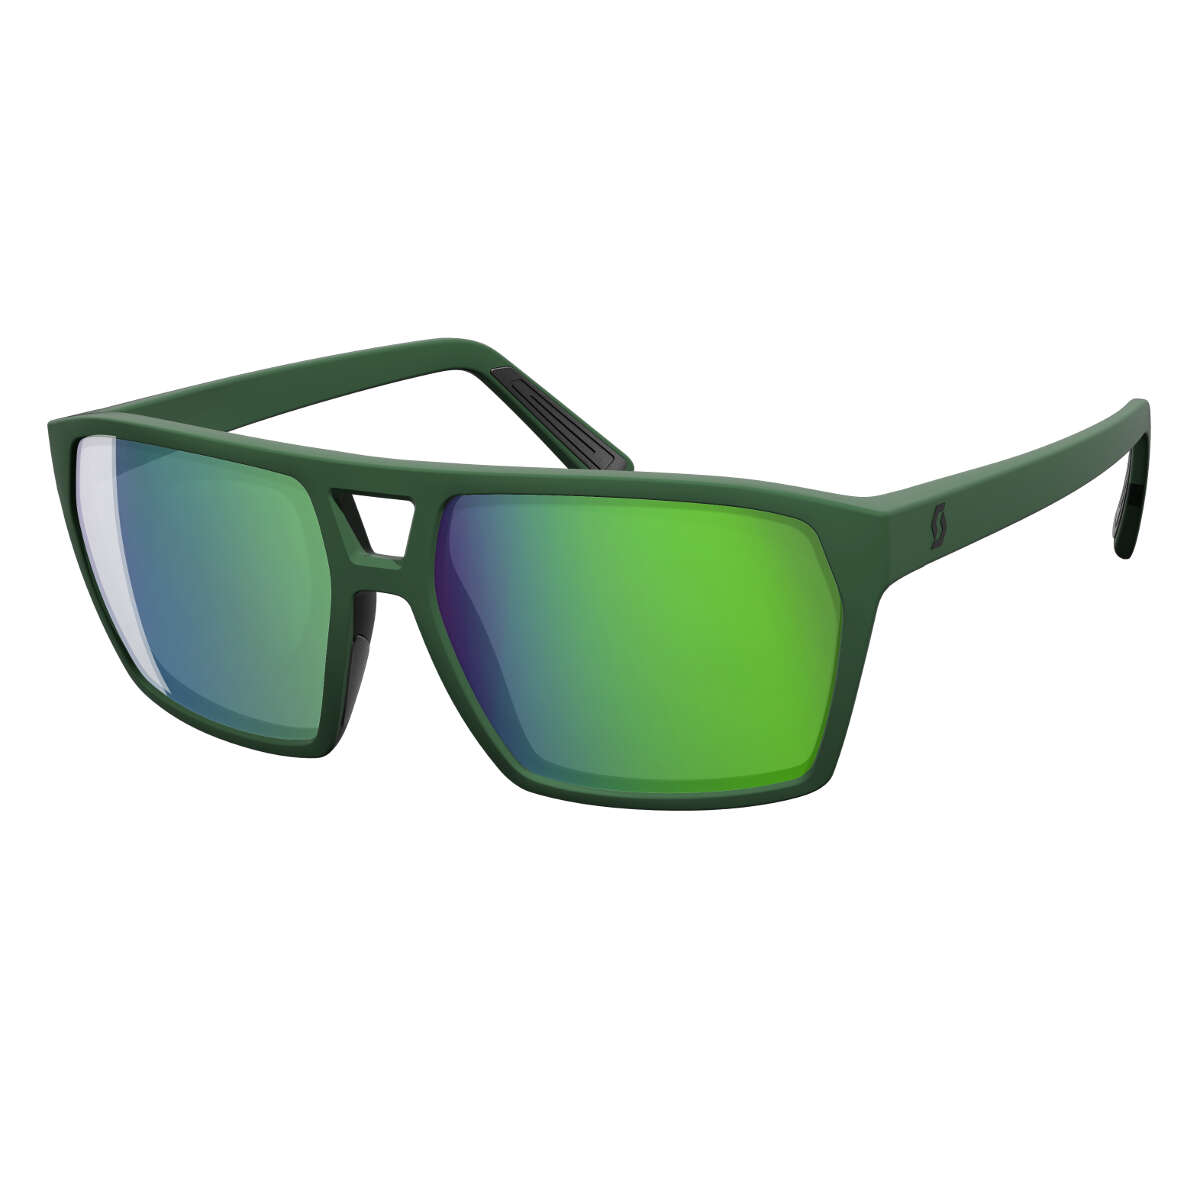 Scott Sunglasses Tune Green - Green Chrome